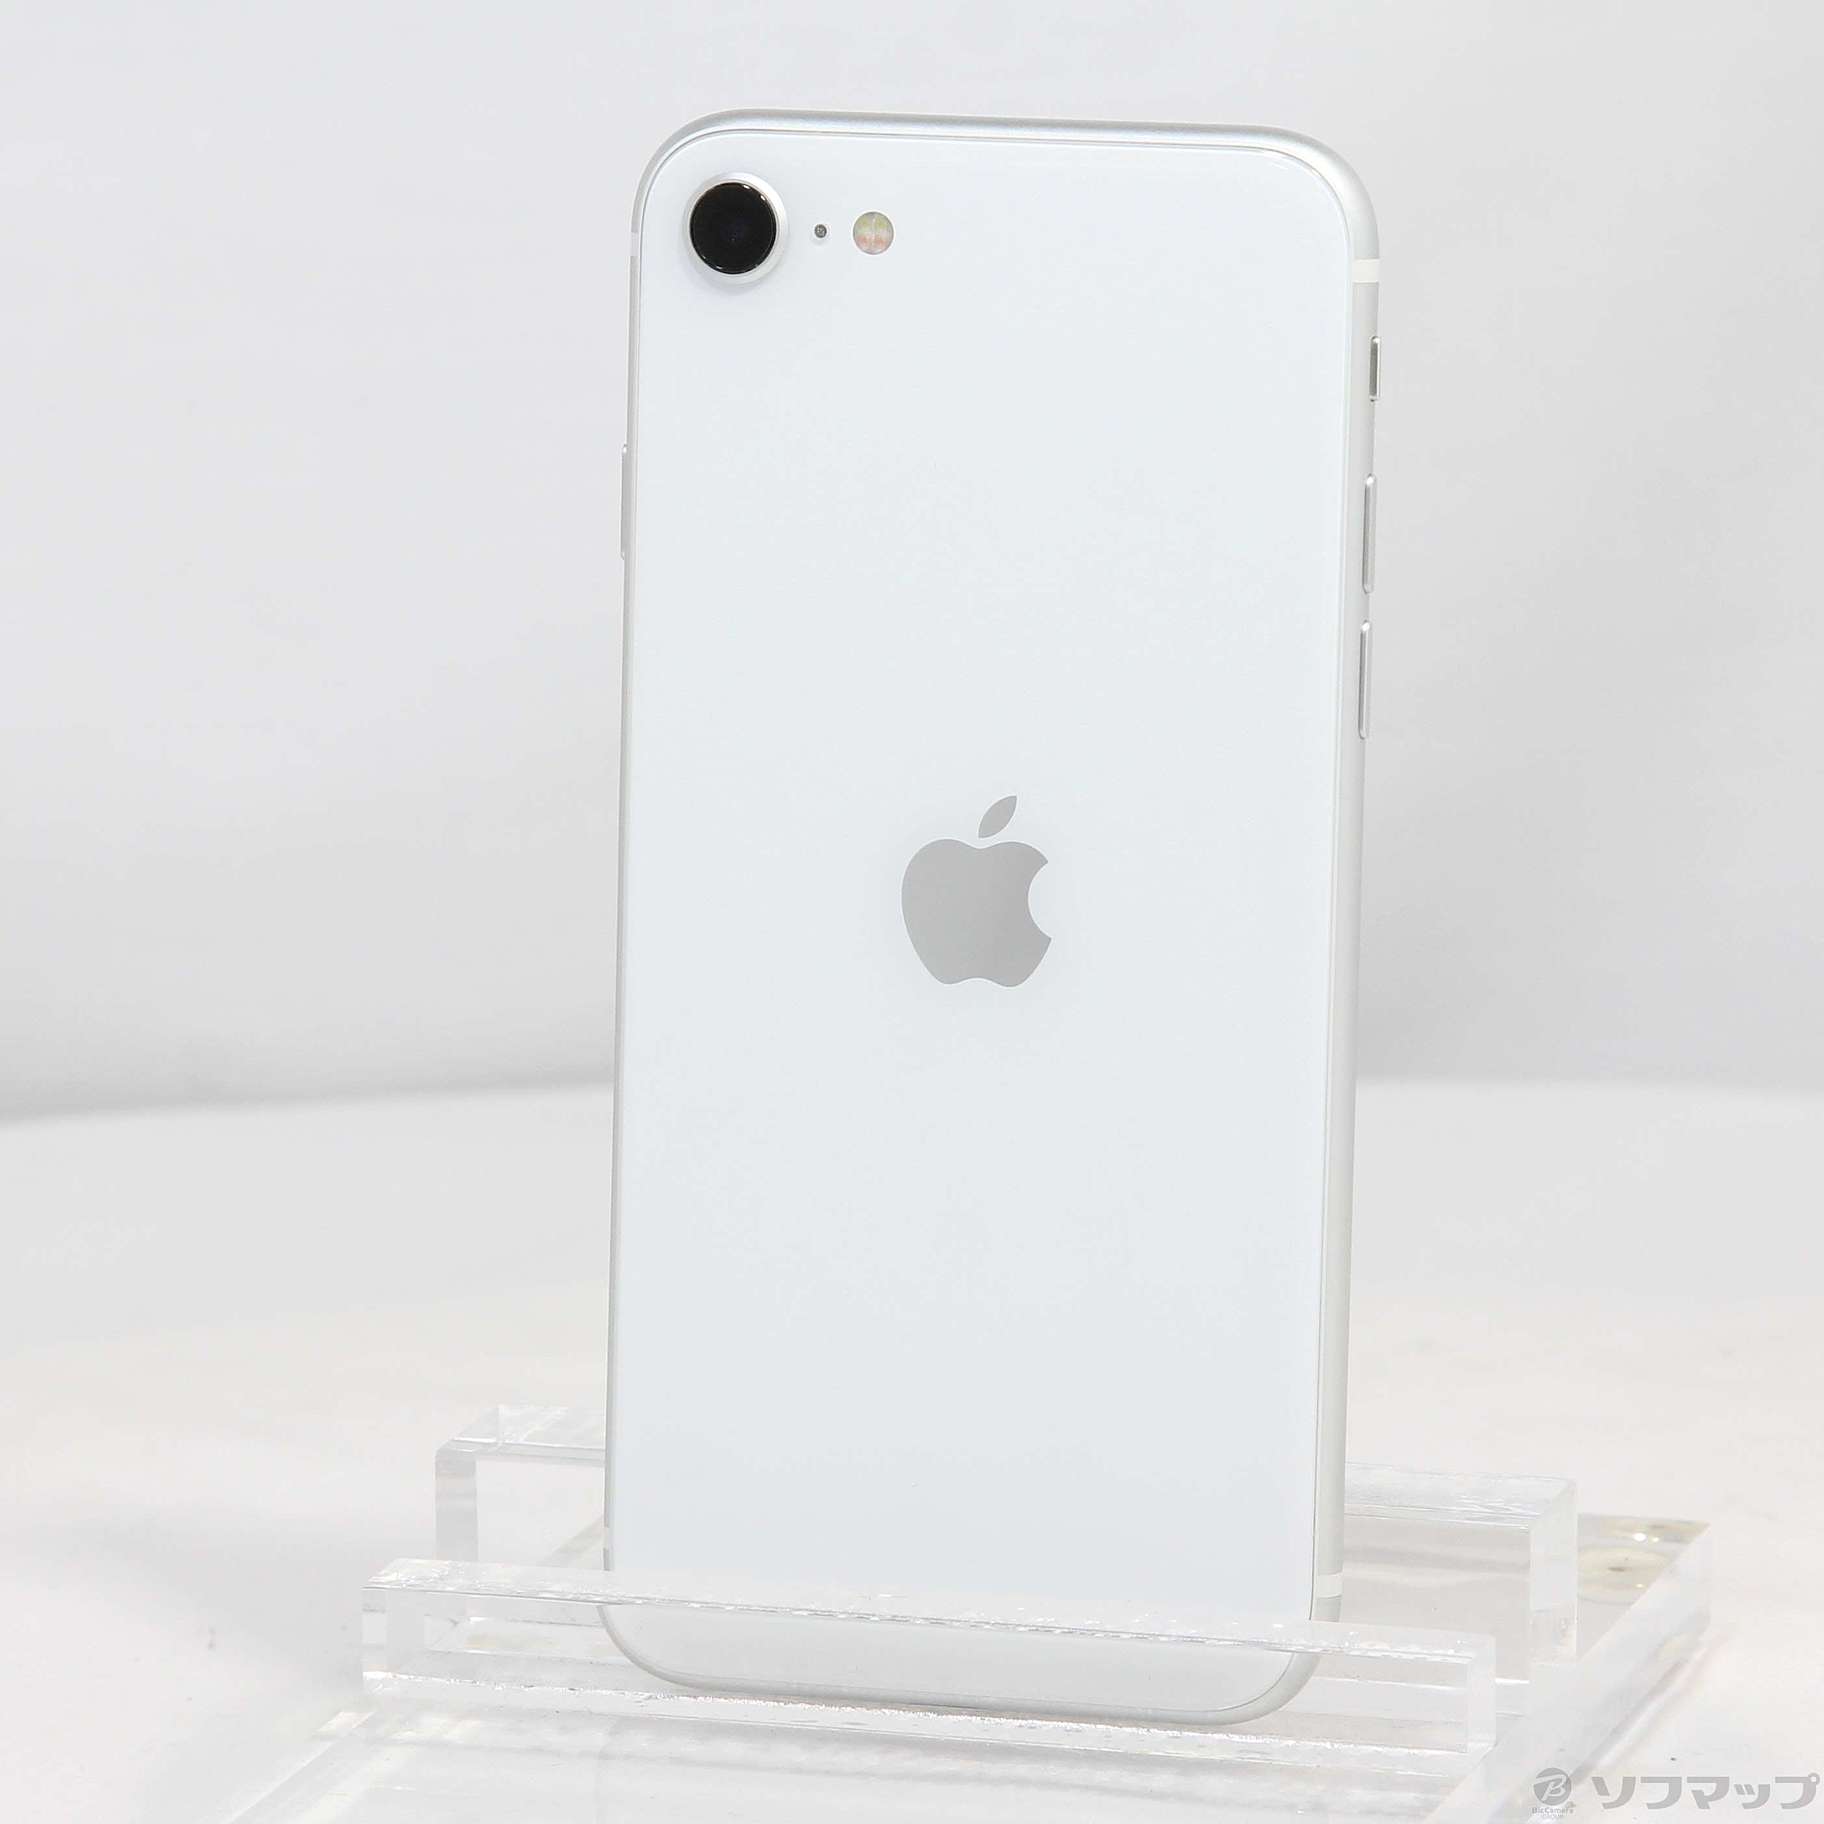 セール 登場から人気沸騰 iPhone SE 第2世代 ホワイト MHGU3J/A 64GB